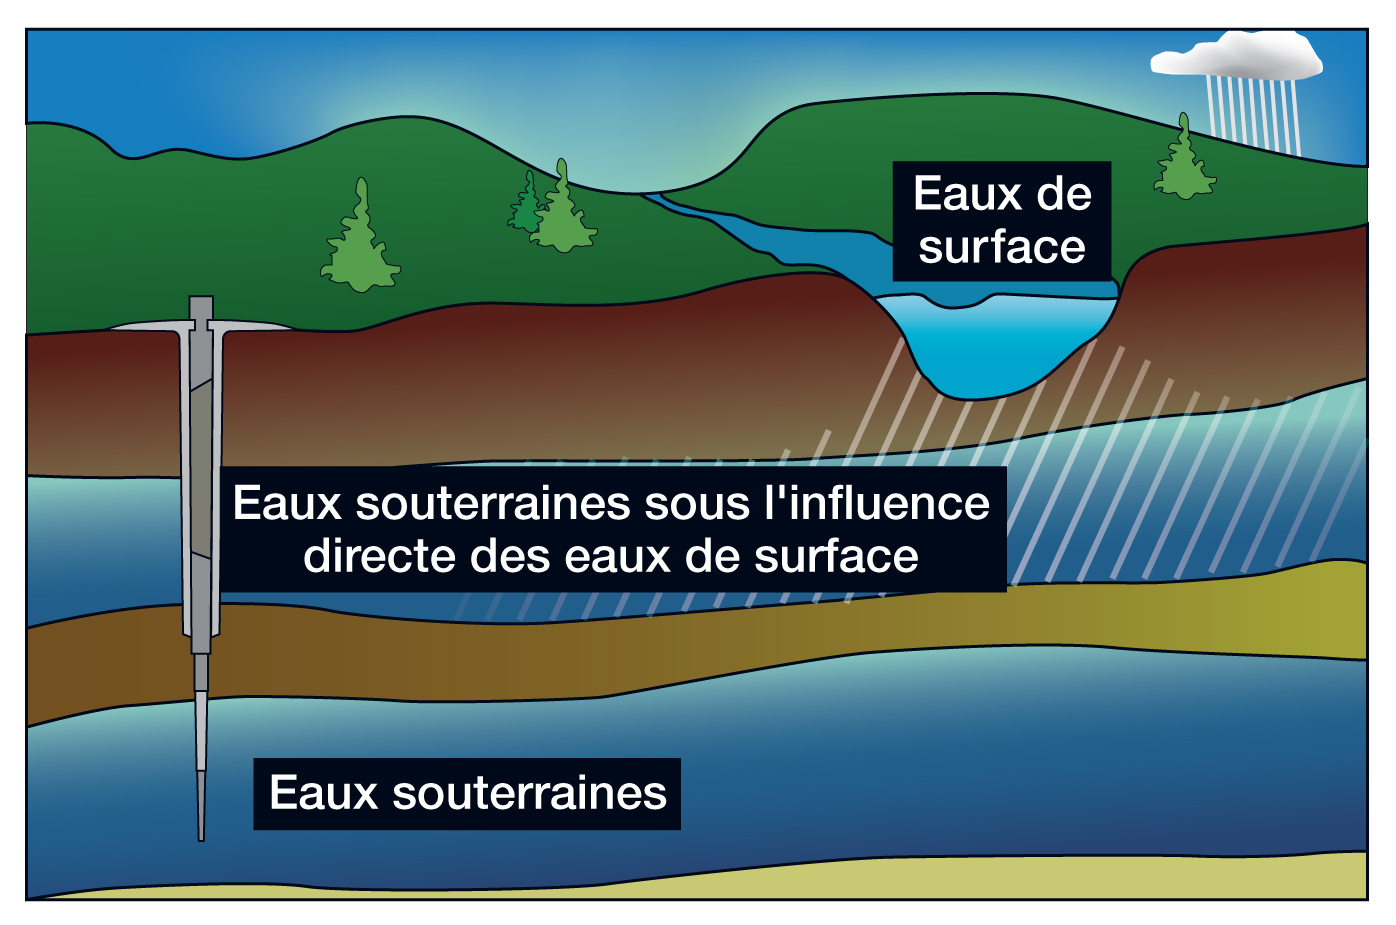 Une illustration qui présente trois types différents de sources d’eau : l’eau de surface, les eaux souterraines sous l’influence directe des eaux de surface et les eaux souterraines.